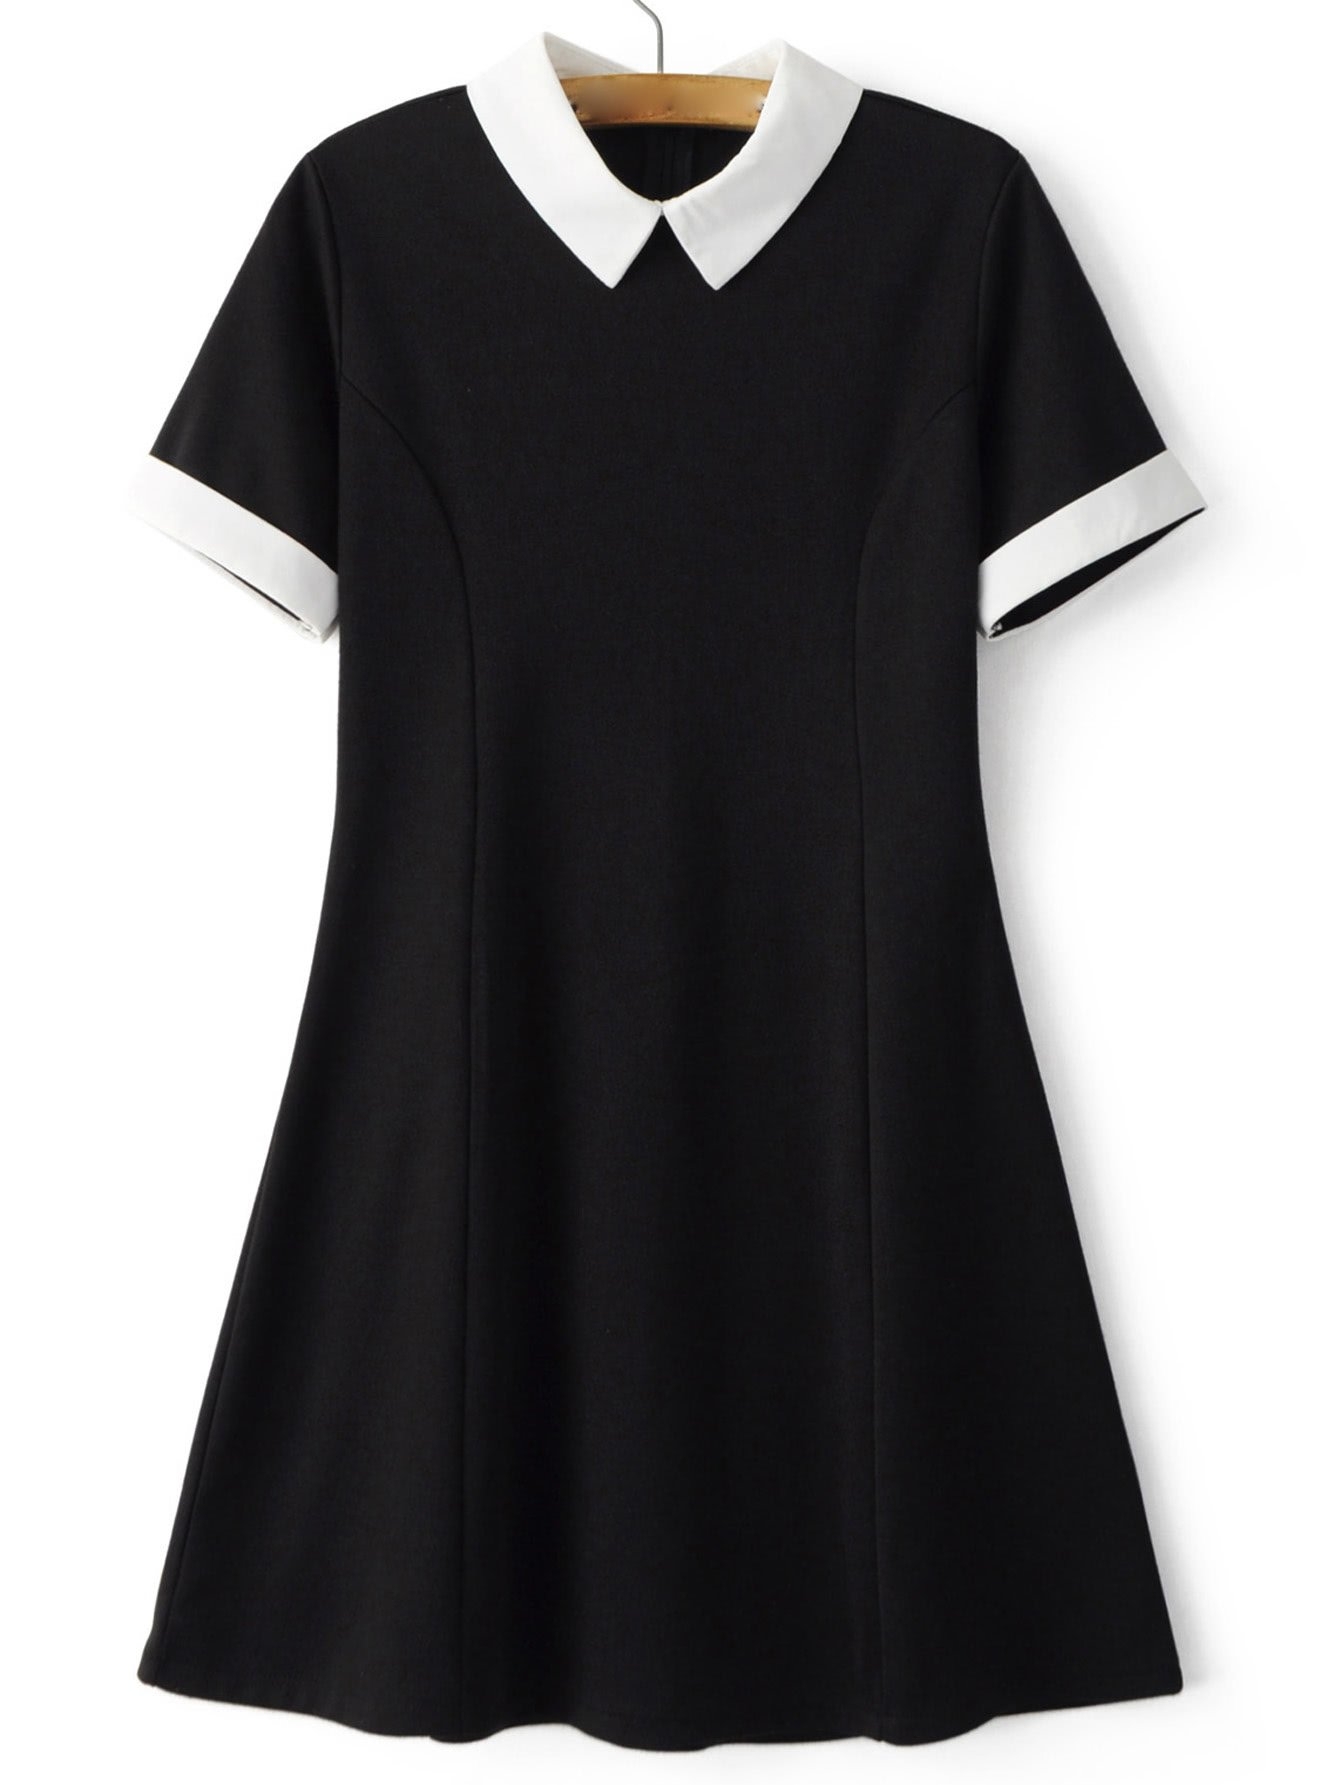 Платье бершка черное с белым воротником